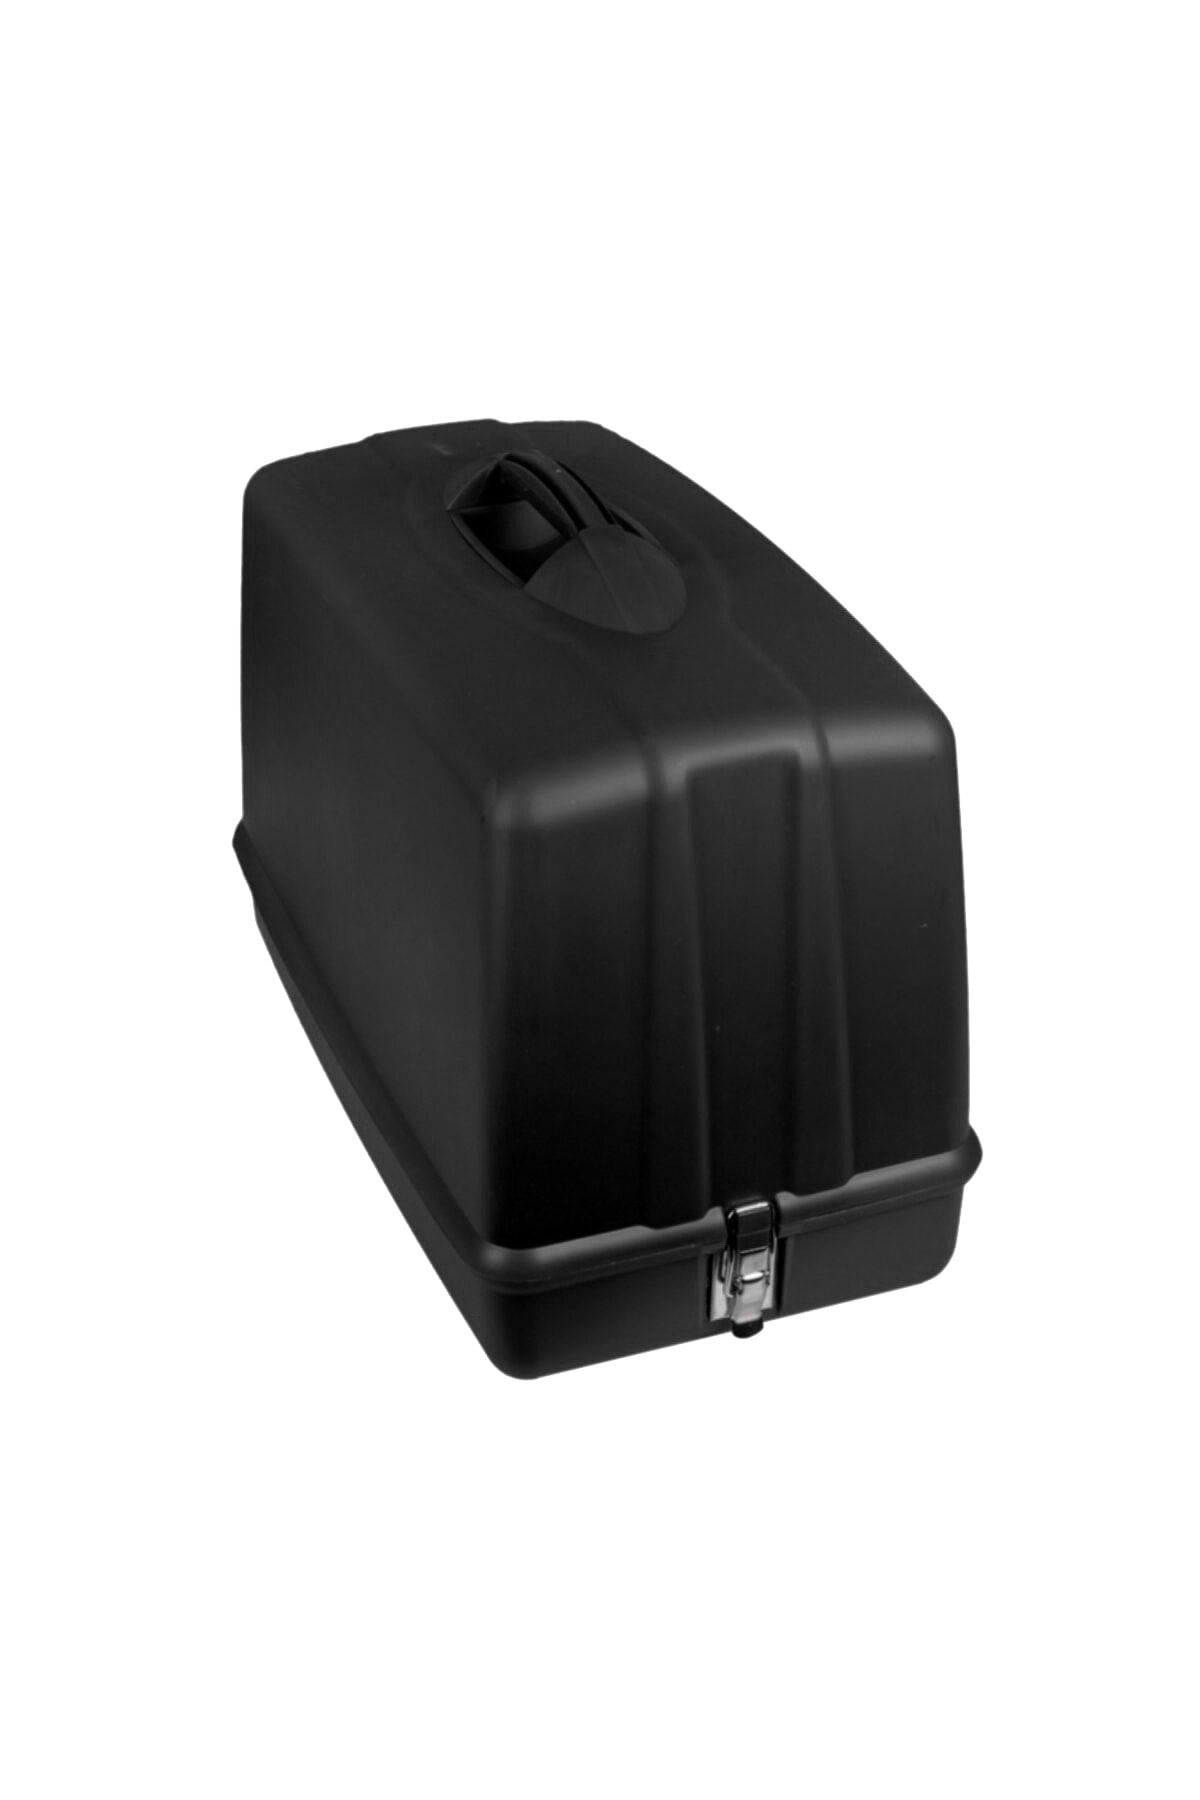 SINGER Tüm Yeni Tip Dikiş Makinelerine Uygun Taşıma Kabı Ve Koruma Çantası (siyah Renk) 202p